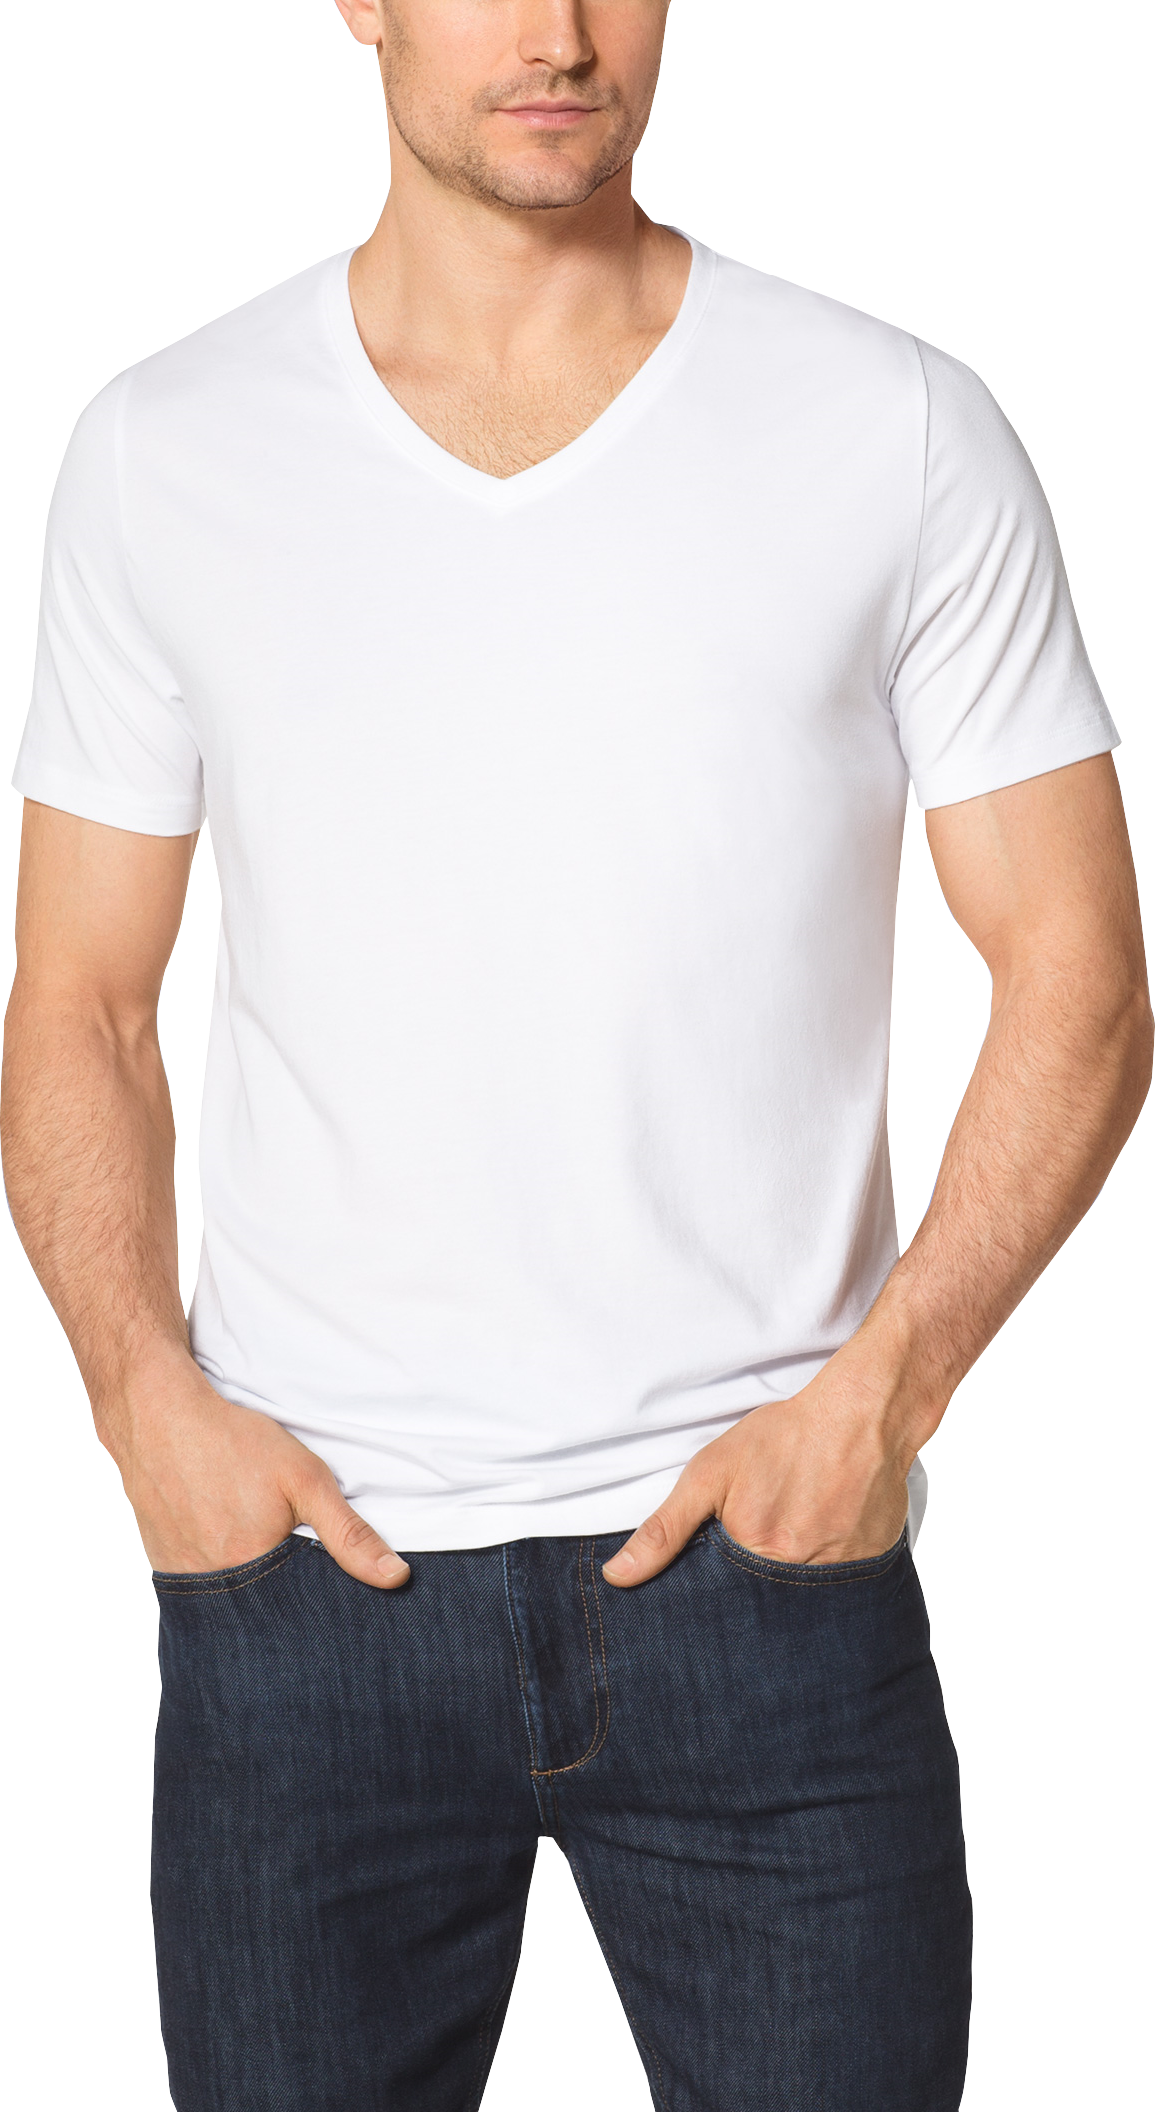 Tommy John Cool Cotton White V- Neck T-Shirt - Men's Underwear | Men's ...